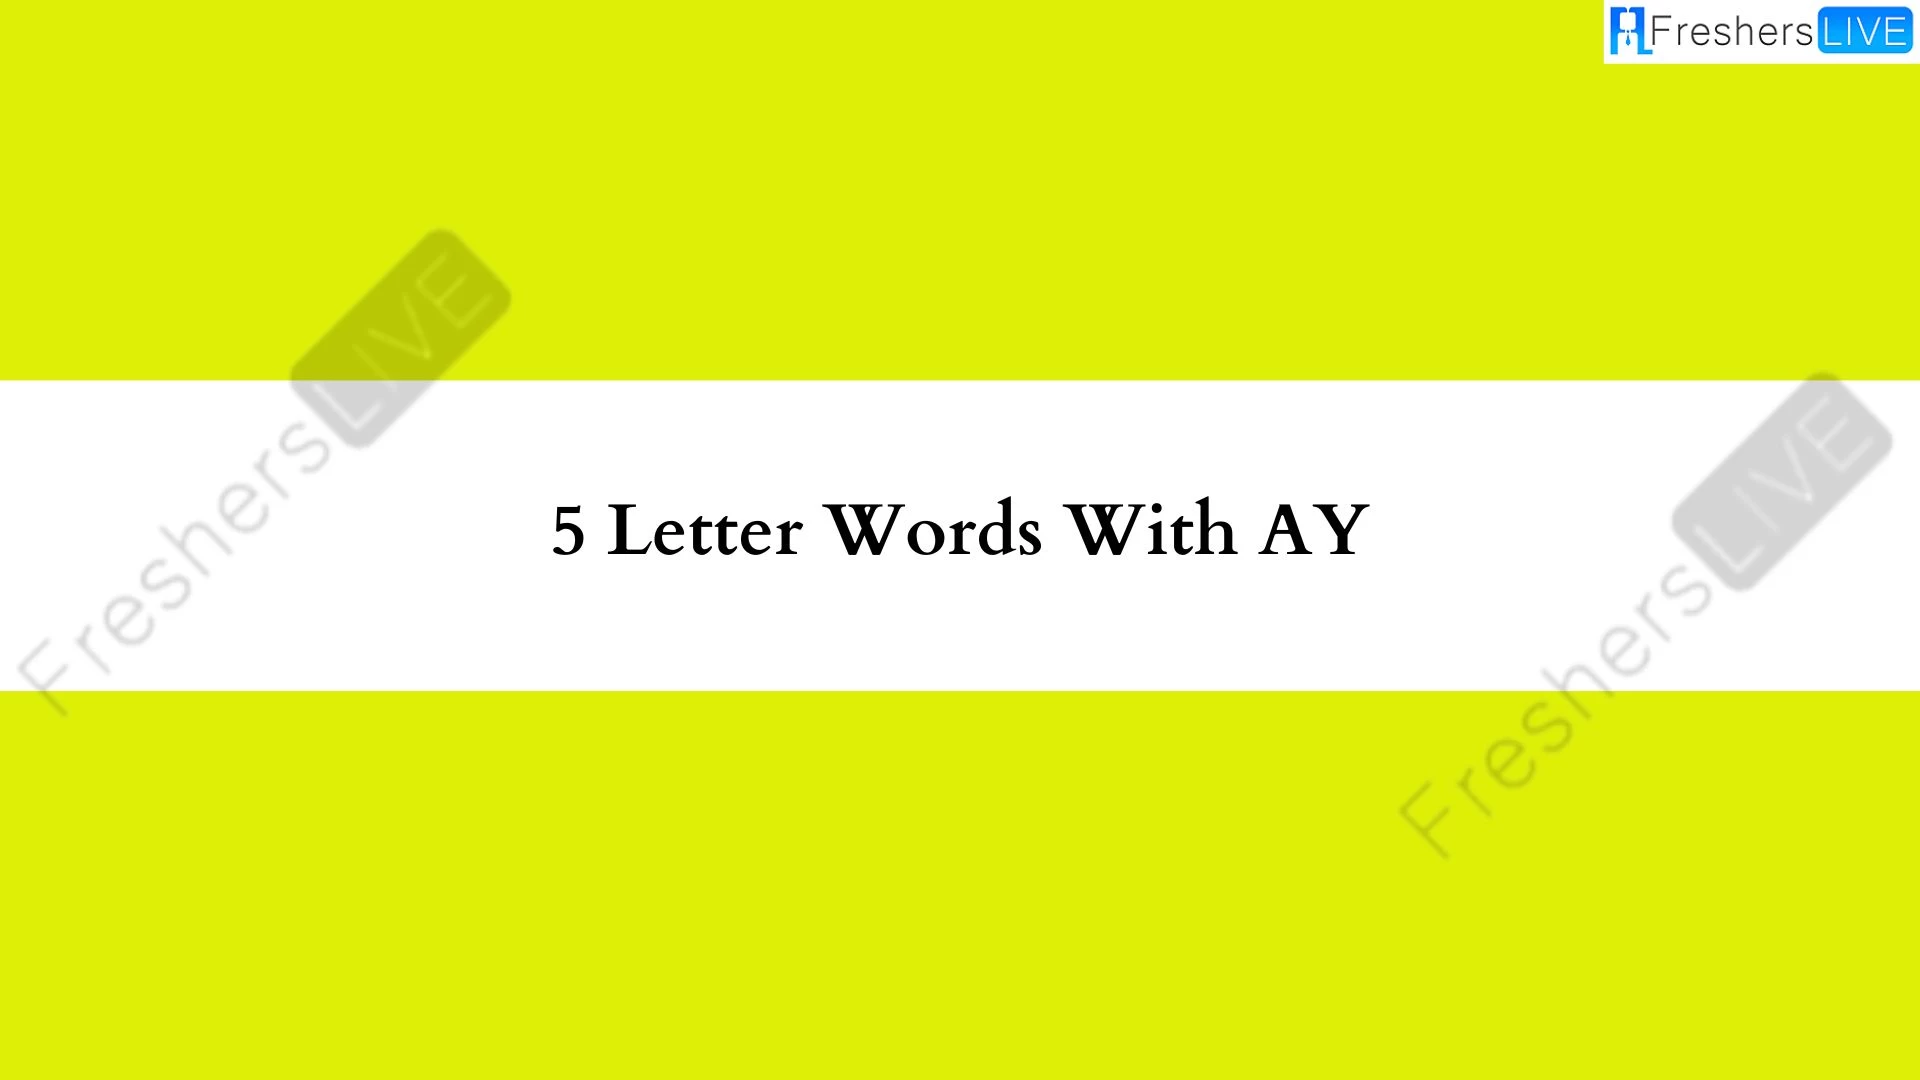 Palabra de 5 letras con lista de todas las palabras AY